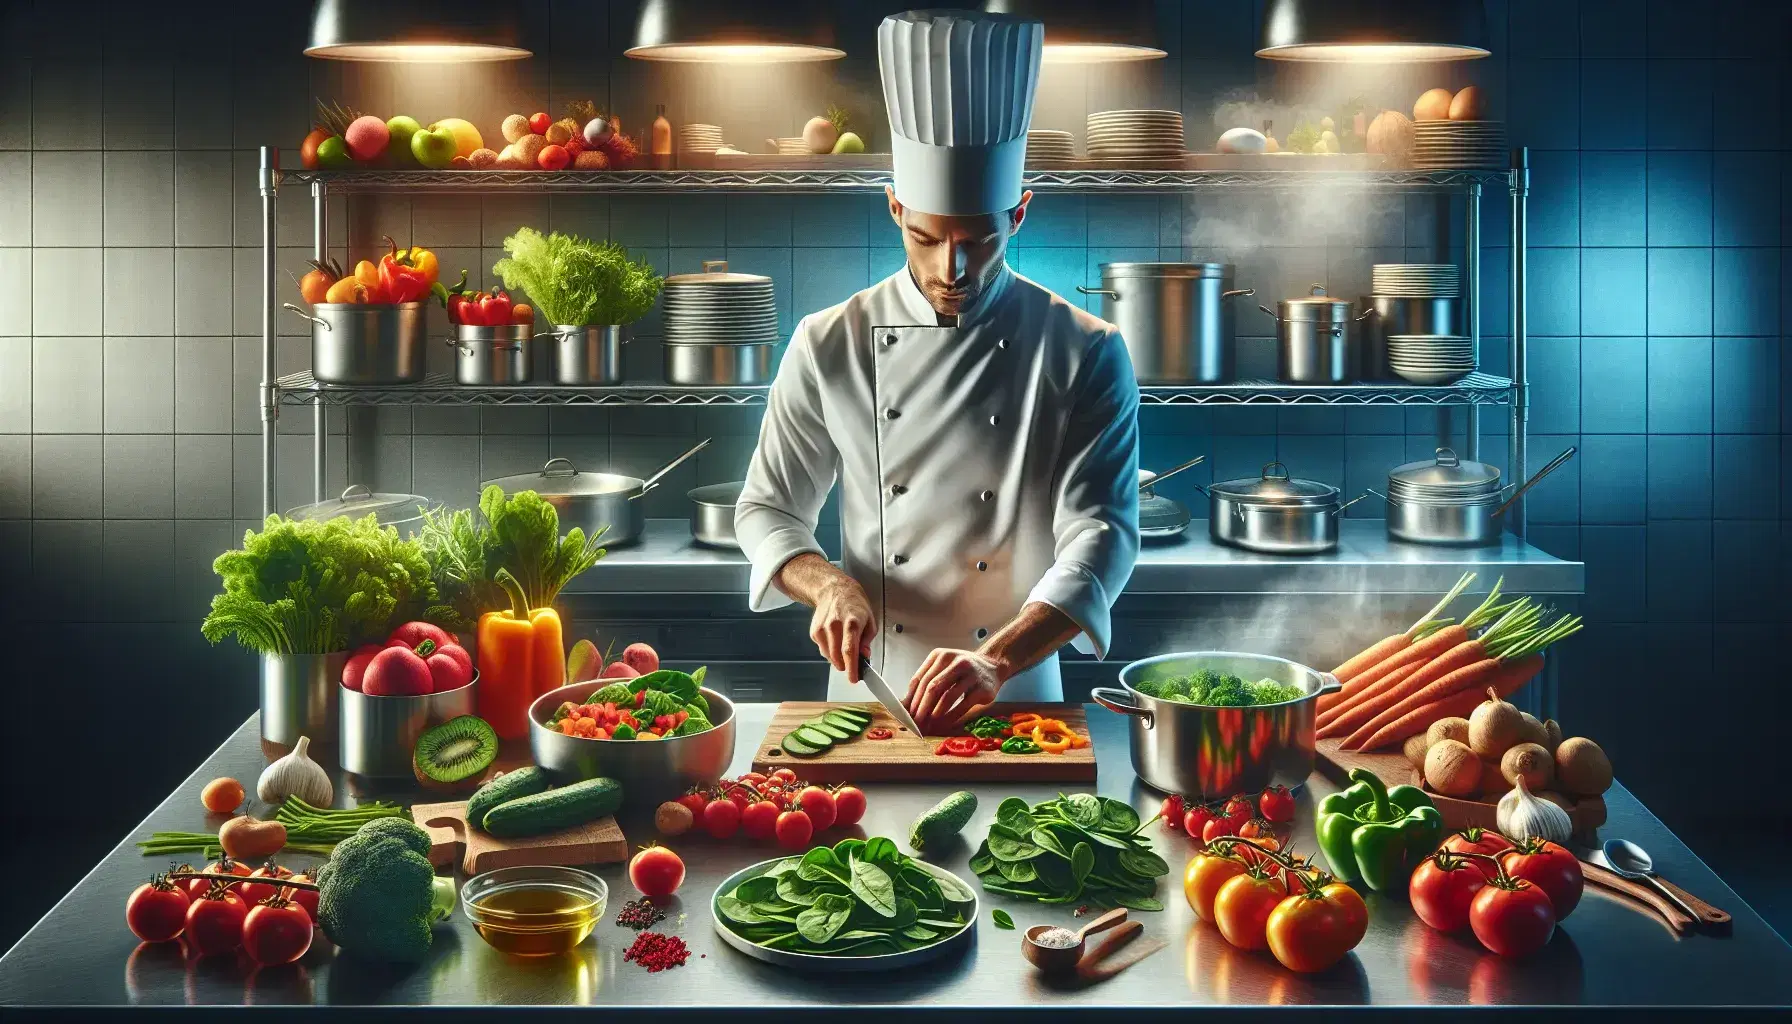 Chef profesional cortando vegetales frescos en cocina luminosa con ingredientes coloridos y utensilios de acero inoxidable.